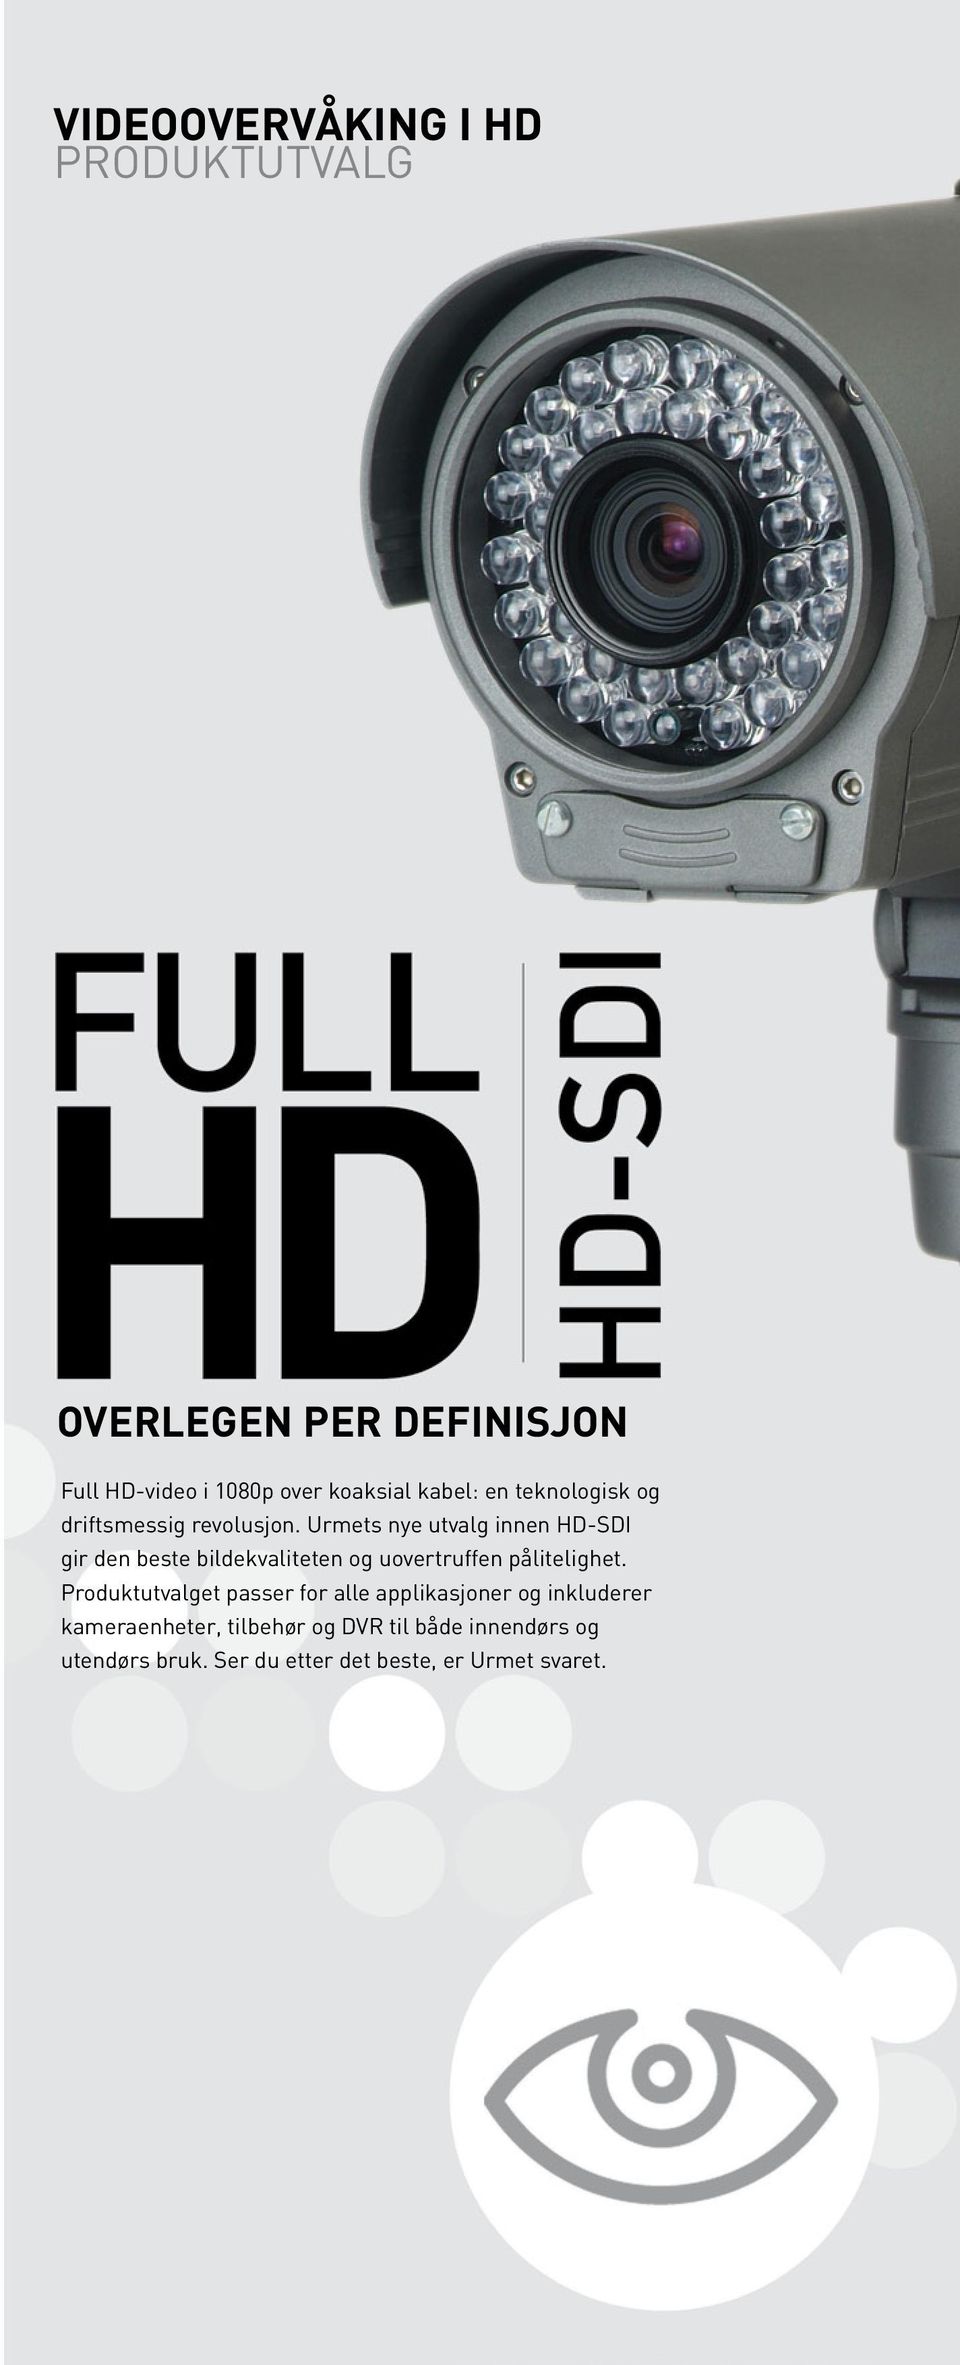 Urmets nye utvalg innen HD-SDI gir den beste bildekvaliteten og uovertruffen pålitelighet.